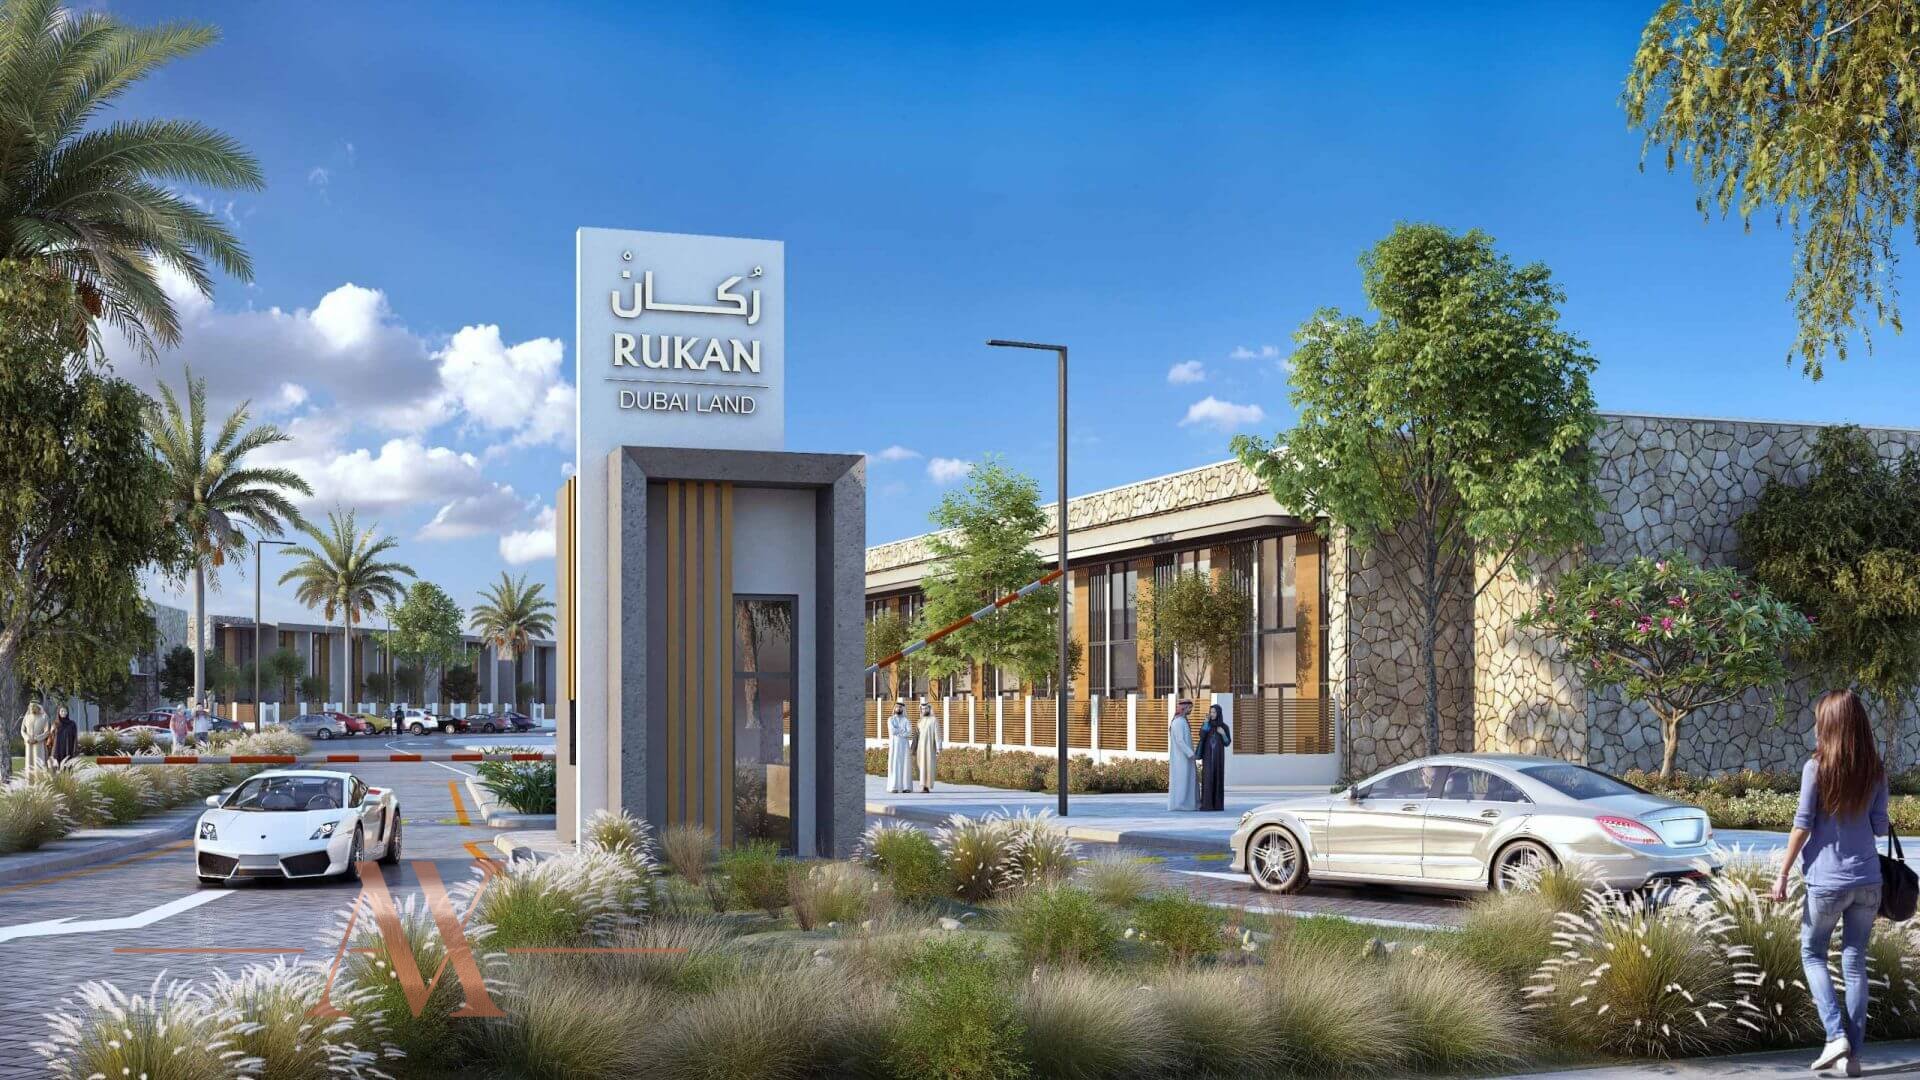 RUKAN LOFTS by Reportage Properties LLC in Rukan, Dubai, UAE